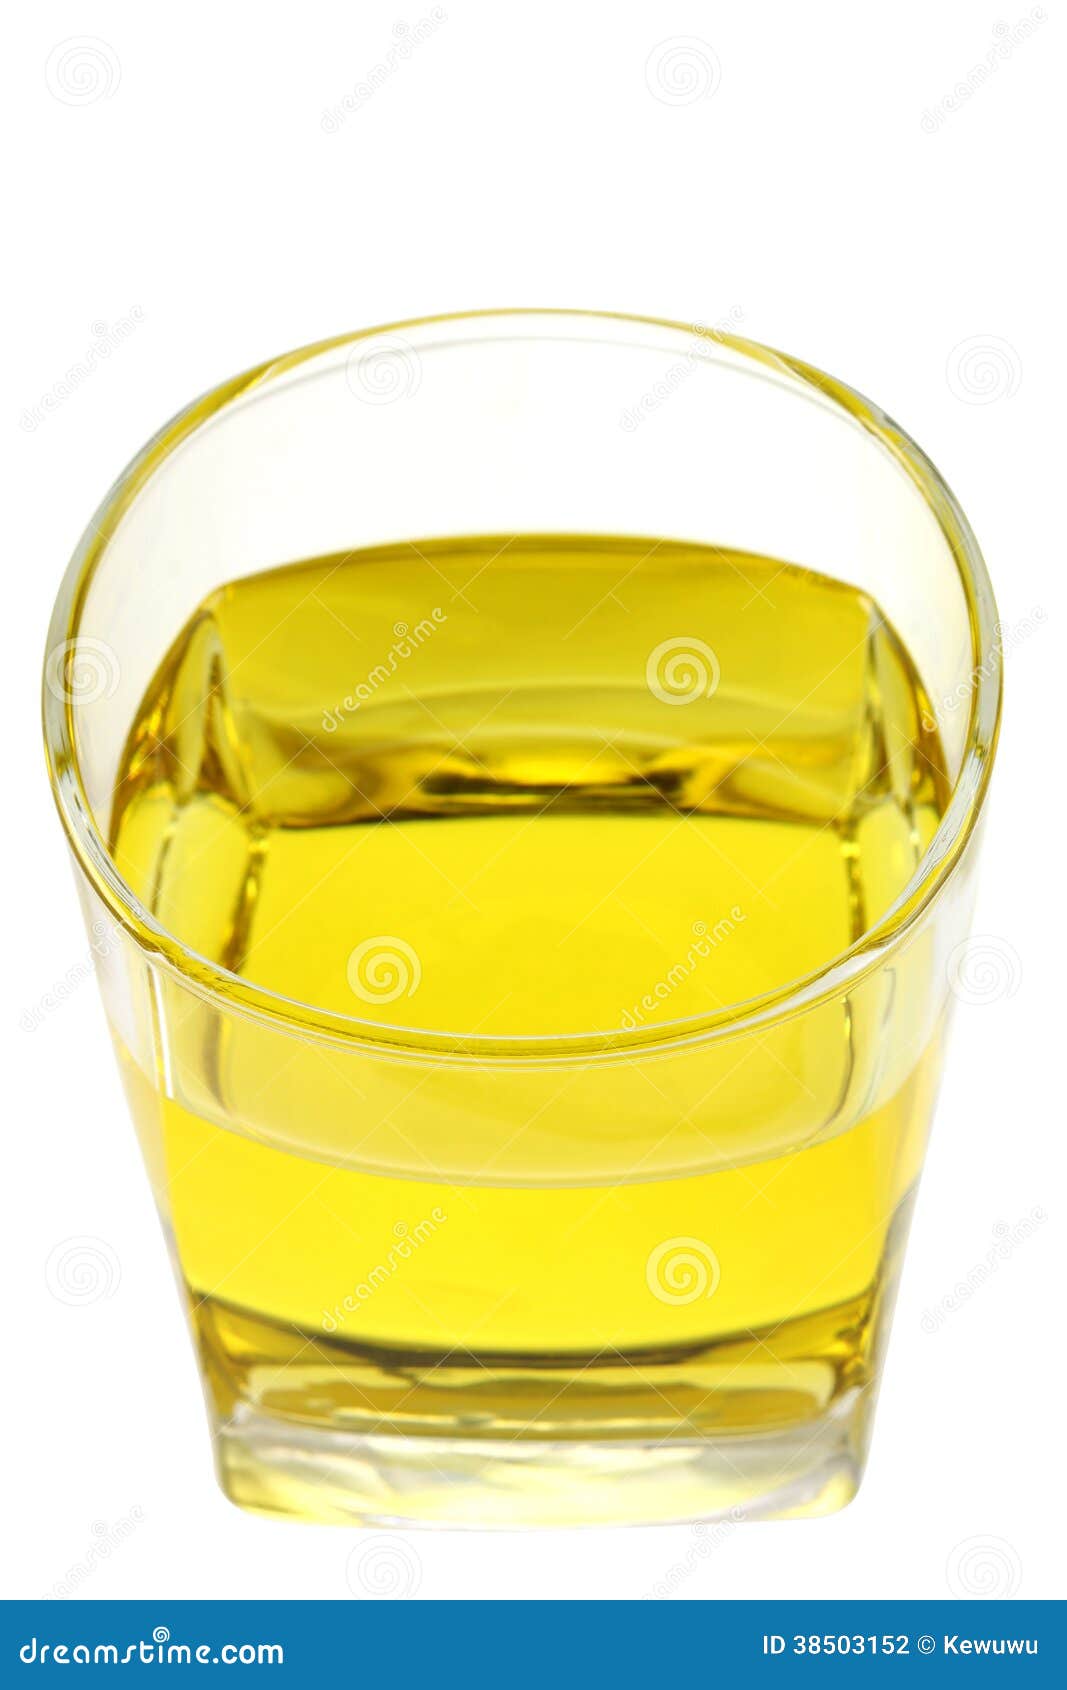 Стакан воды и стакан подсолнечного масла. Растительное масло в стакане. Подсолнечное масло в стакане. 0 5 Стакана подсолнечного масла. Стаканчик с маслом.